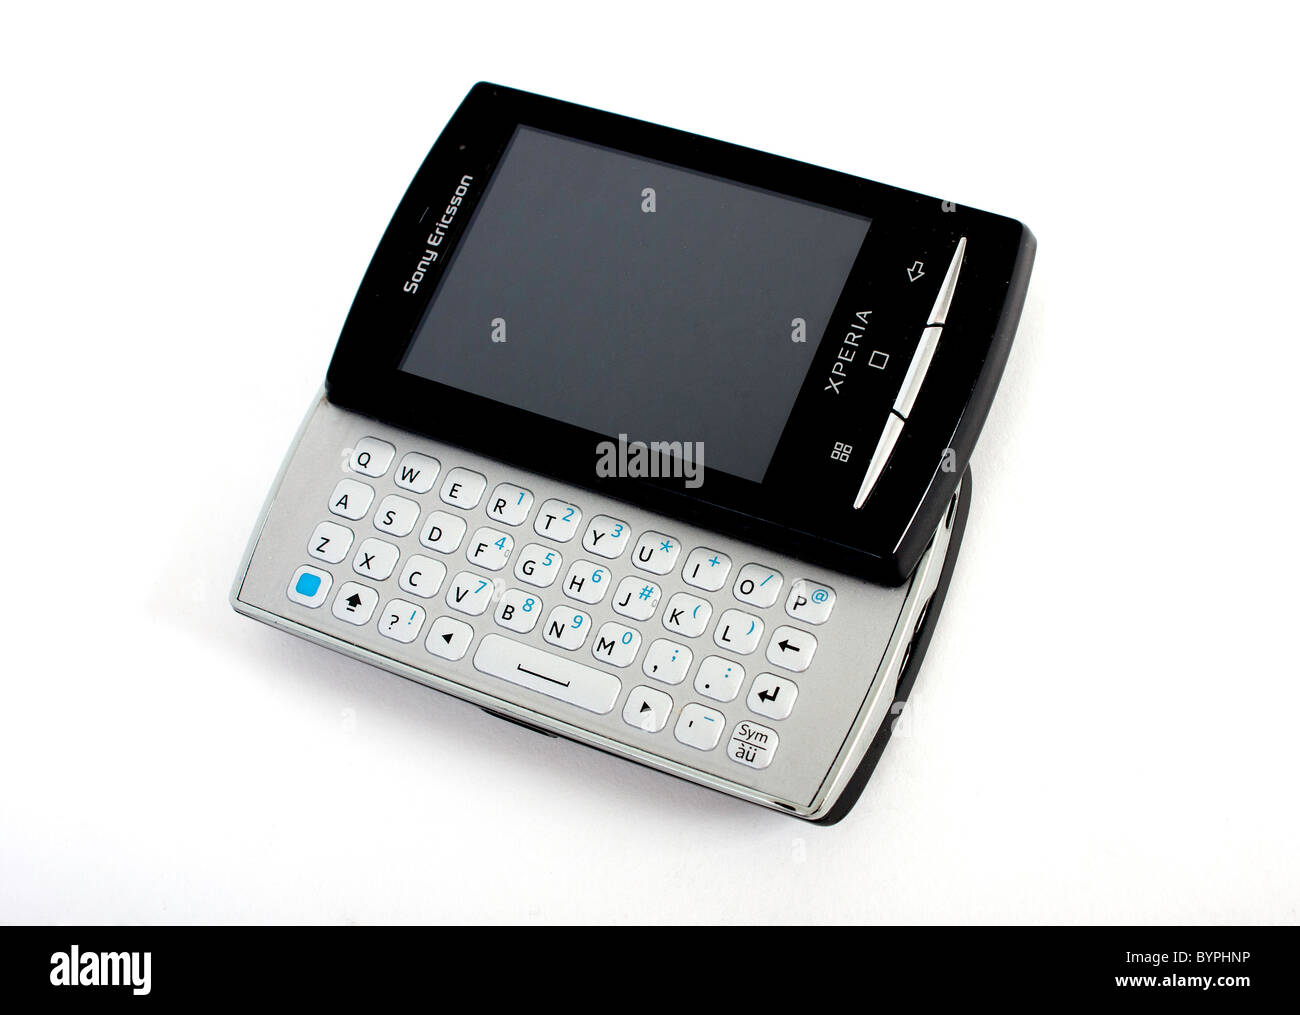 Le nouveau Sony Ericsson Xperia mini pro téléphone mobile avec clavier  QWERTY complet coulissant out ; afficher un écran vide Photo Stock - Alamy